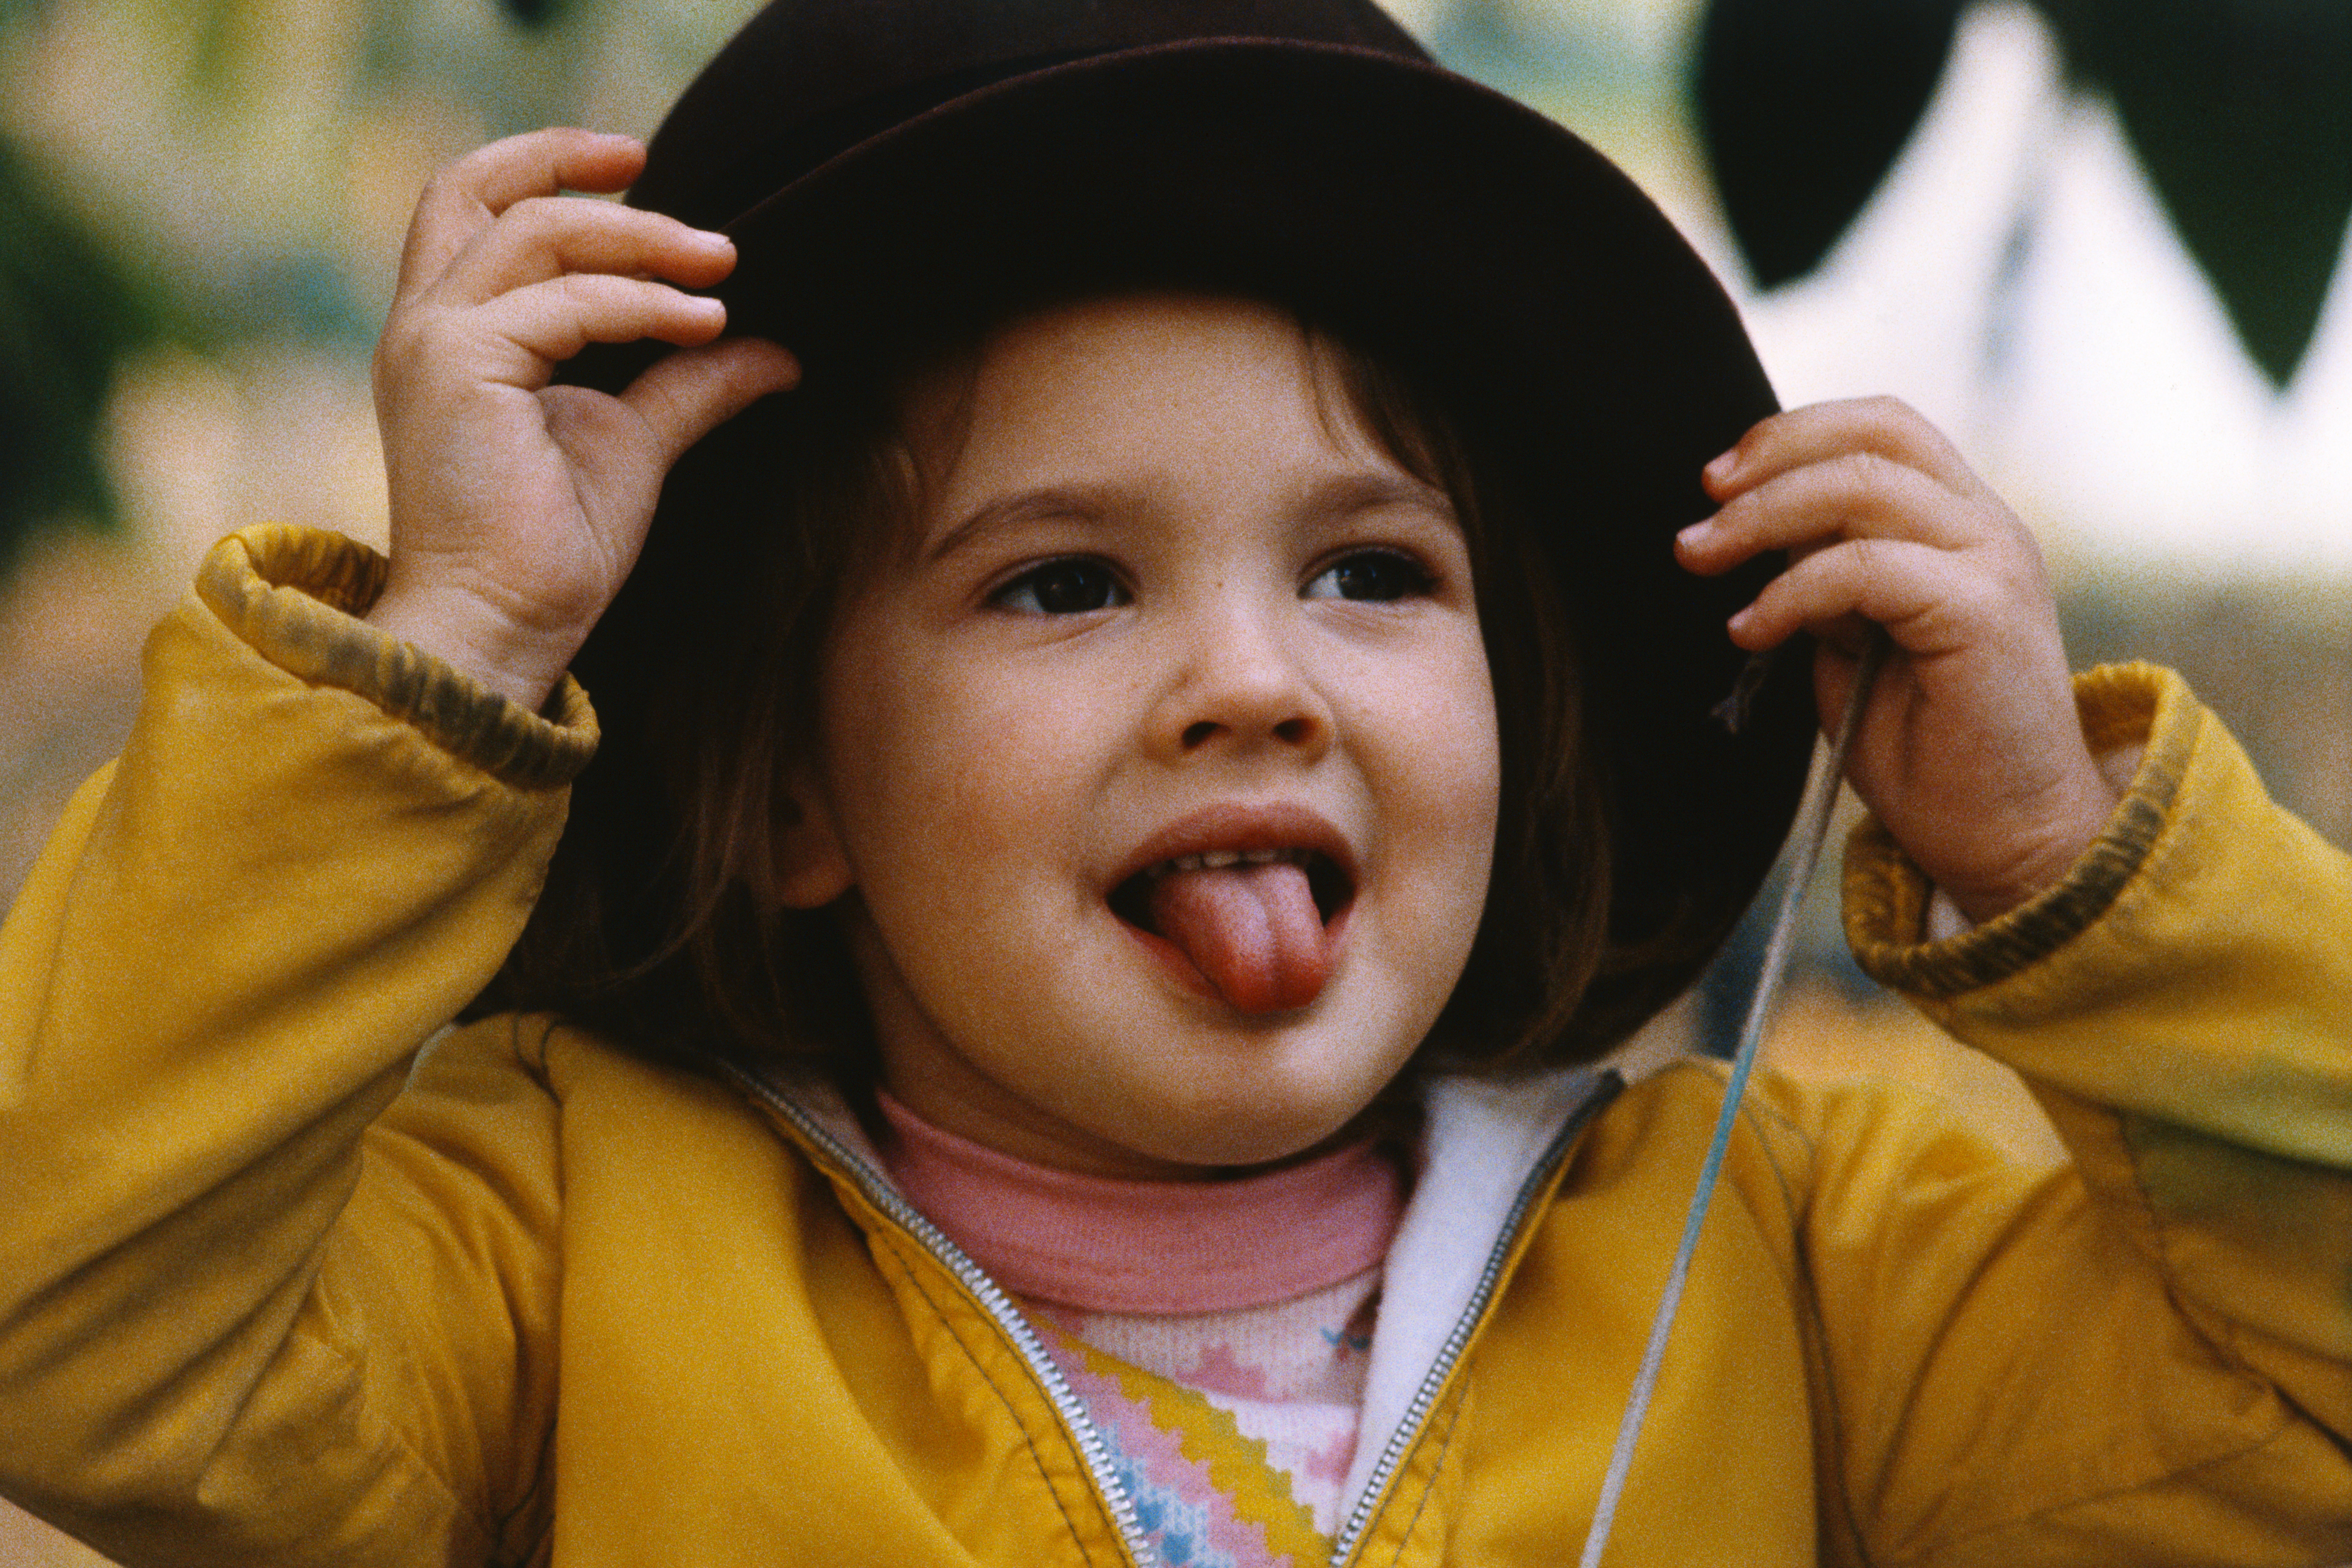 La estrella de cine, de 4 años, se imagina que es mayor mientras se prueba uno de los sombreros de su madre el 21 de marzo de 1979. | Fuente: Getty Images